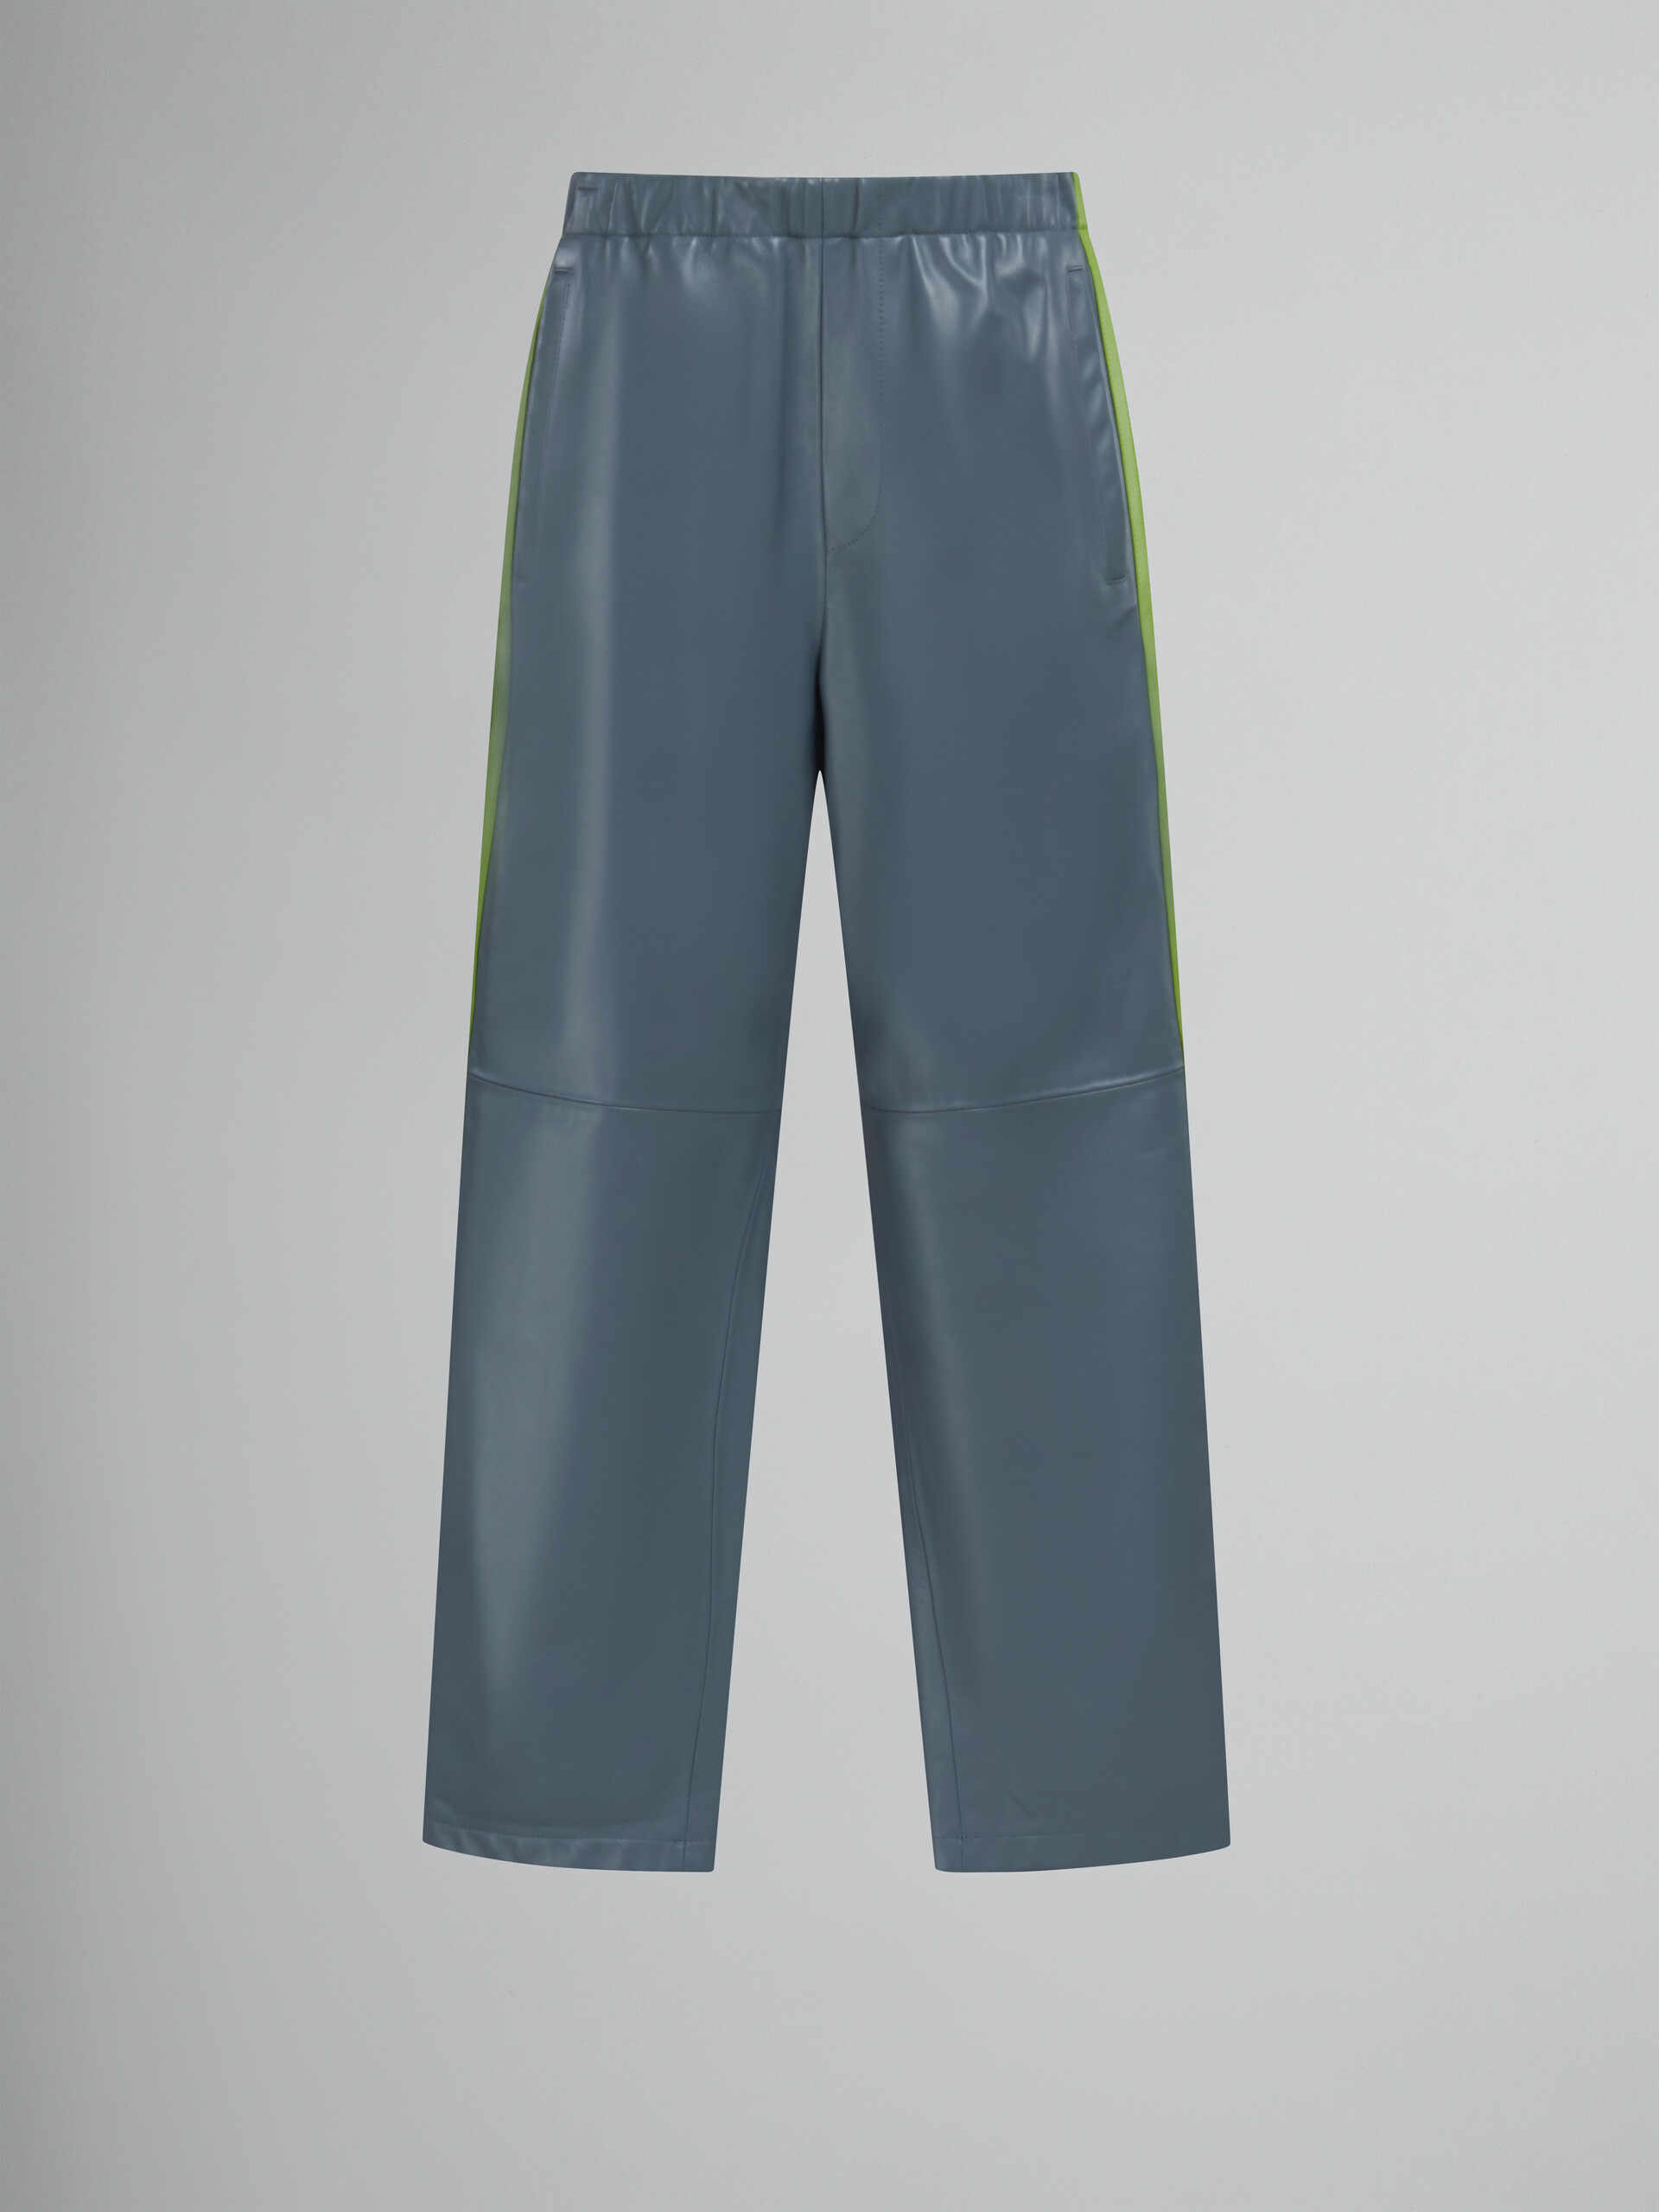 Pantalón de jogging de piel de napa verde azulado - Pantalones - Image 1